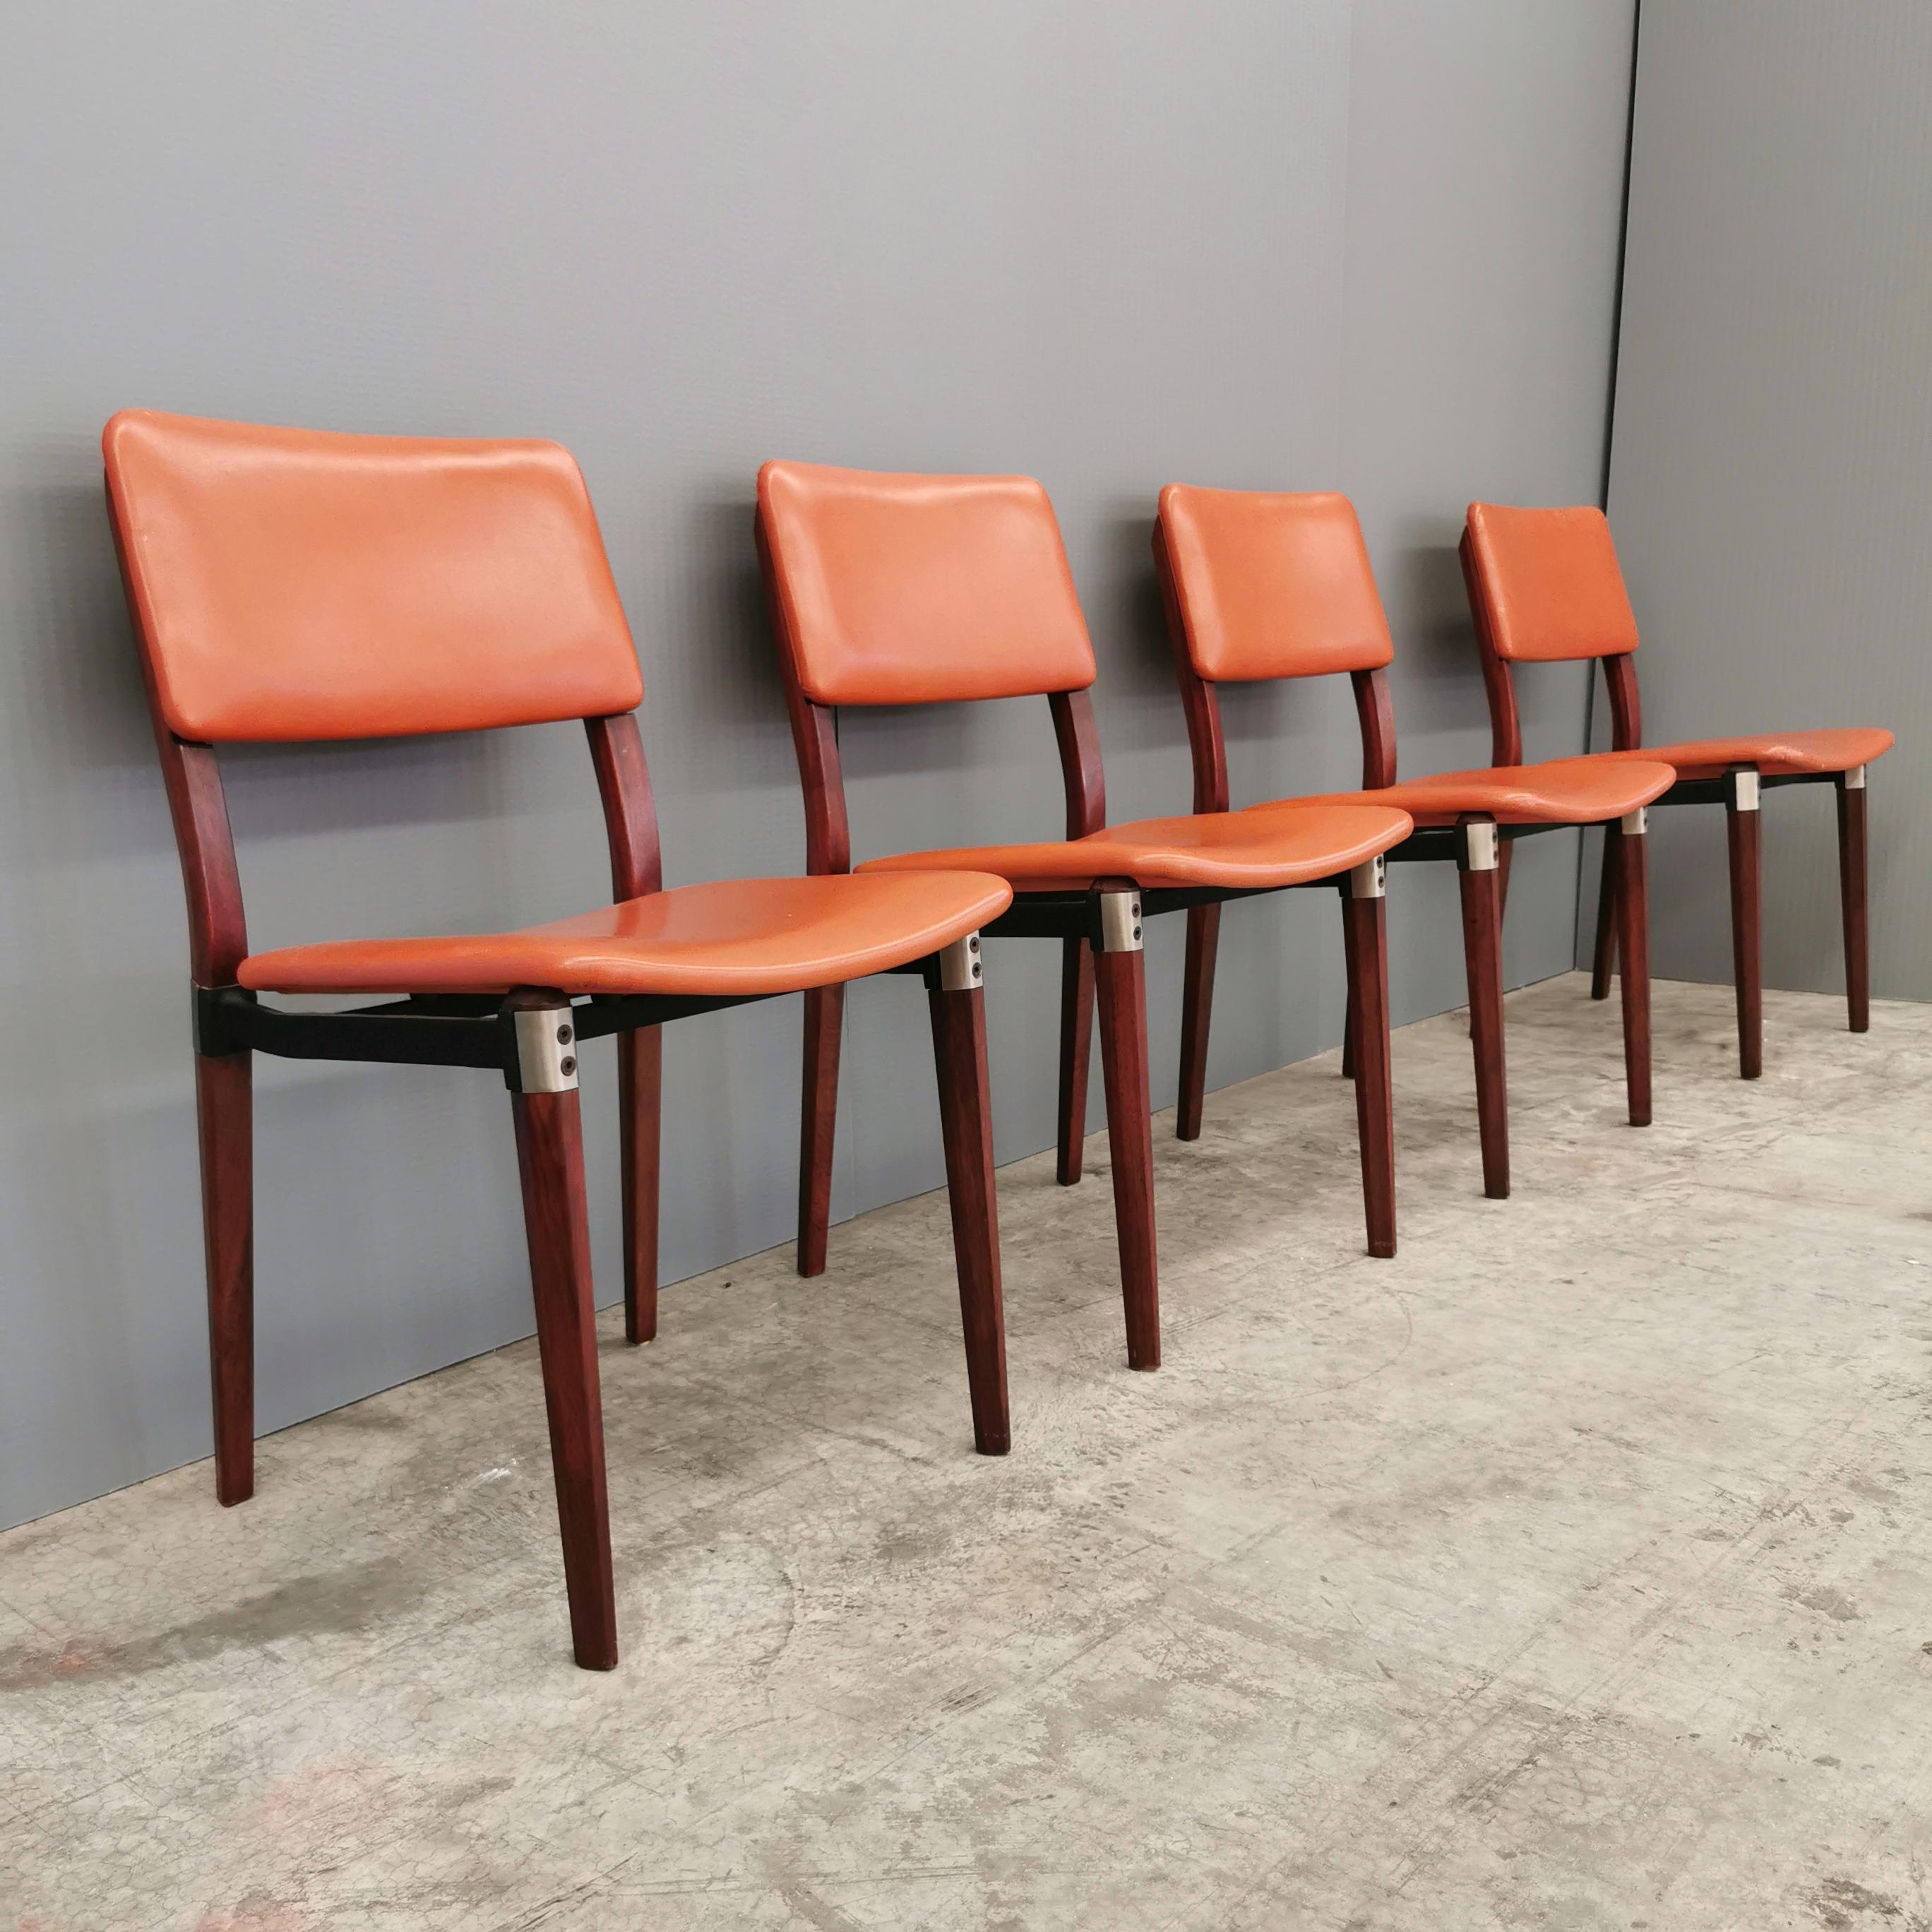 satz von 4 Stühlen mit Holzrahmen und Lederbezug. Entworfen in den frühen 1960er Jahren von Eugenio Gerli für Tecno. Sehr eleganter und robuster Stuhl mit Stahleinlagen und Gelenken. Die Stühle sind in ausgezeichnetem Zustand, ohne Kratzer, Flecken